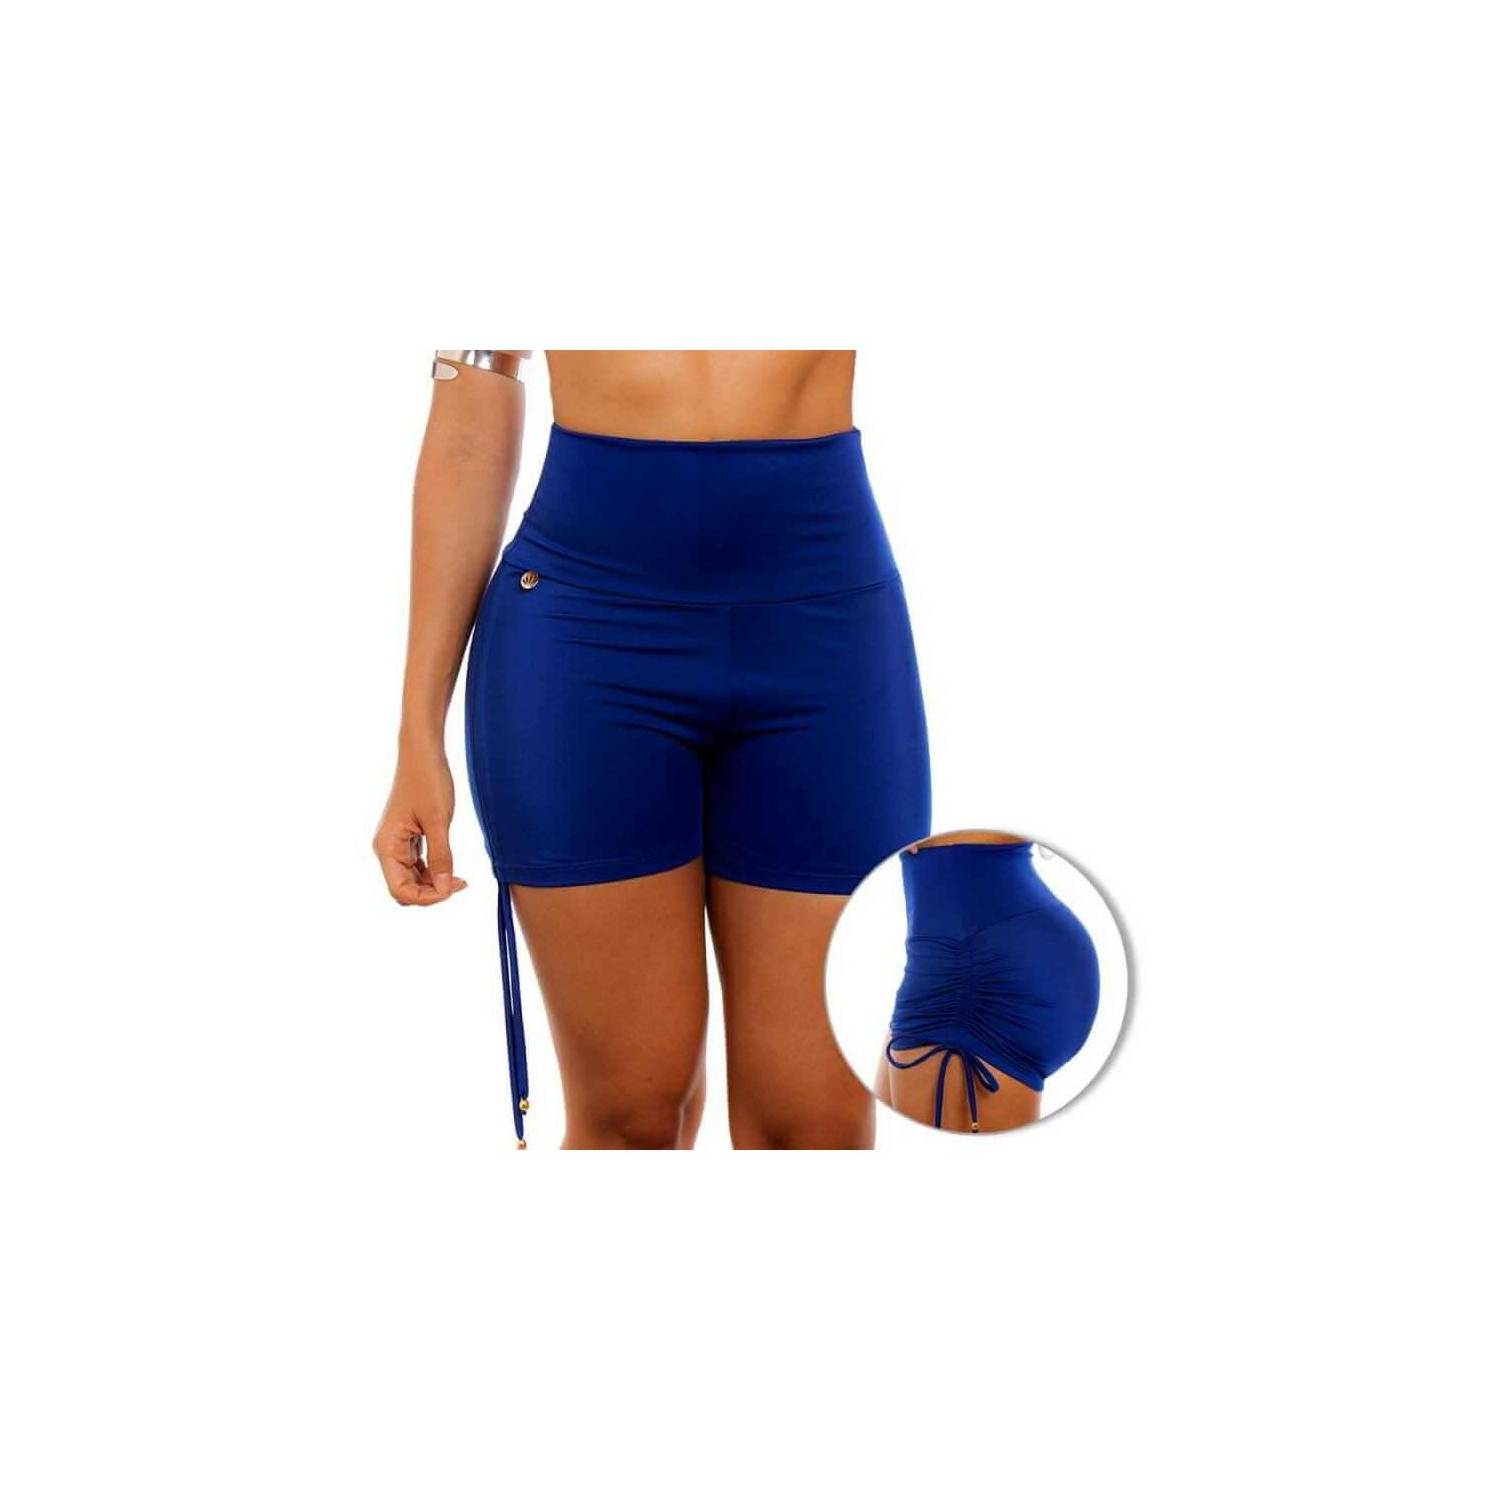 Panty Short De Vestido De Baño REF: 0001 Cachetero Control Abdomen 18 Azul